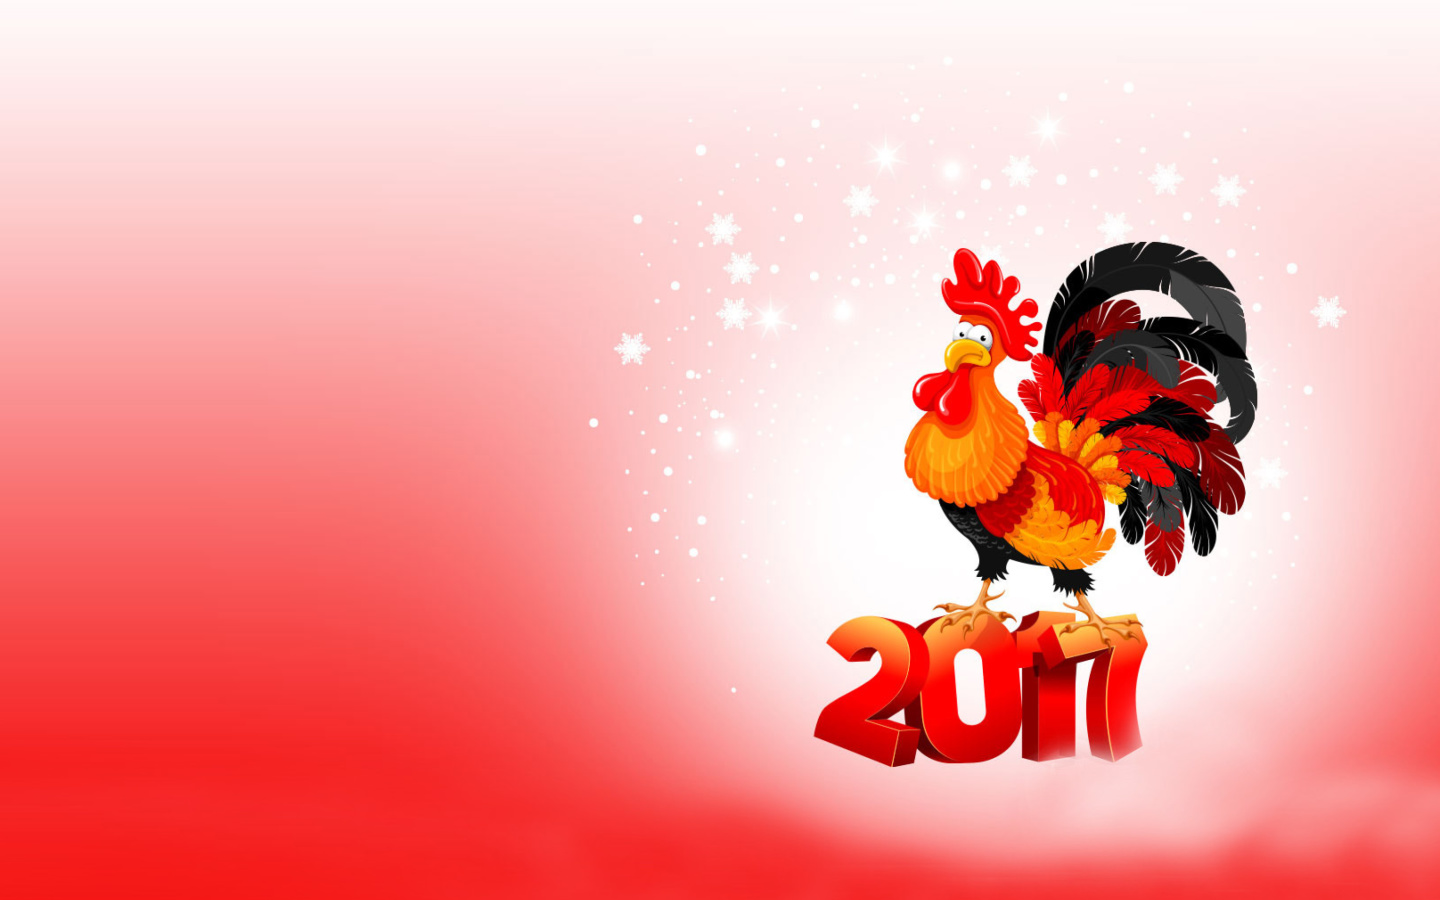 Обои 2017 New Year of Cock 1440x900